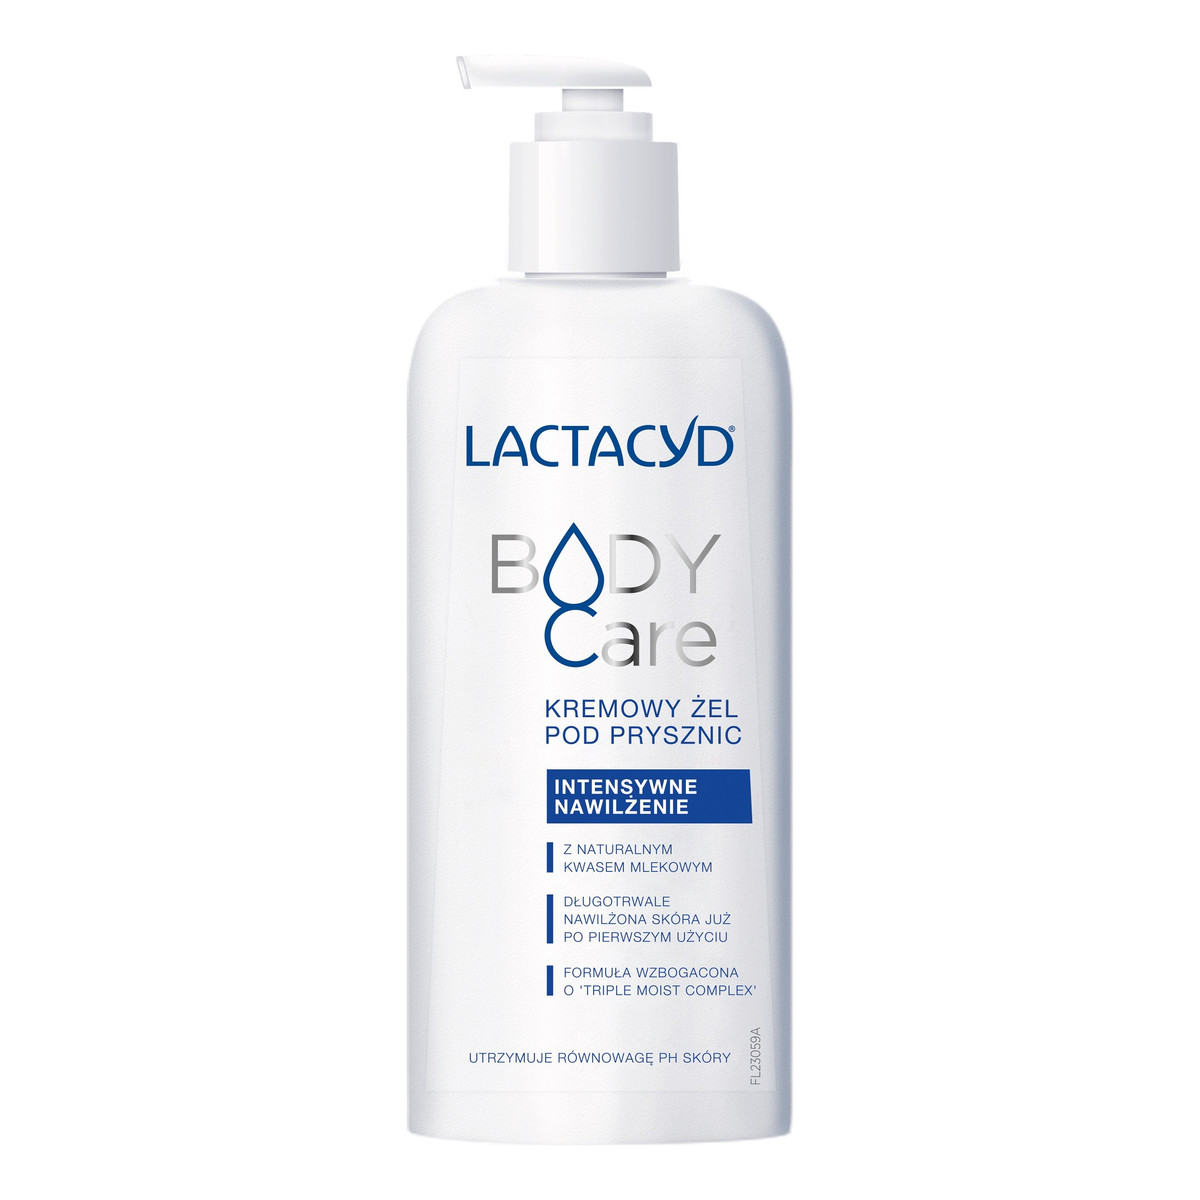 Lactacyd Body Care Kremowy żel pod prysznic Intensywne Nawilżenie 1 szt.